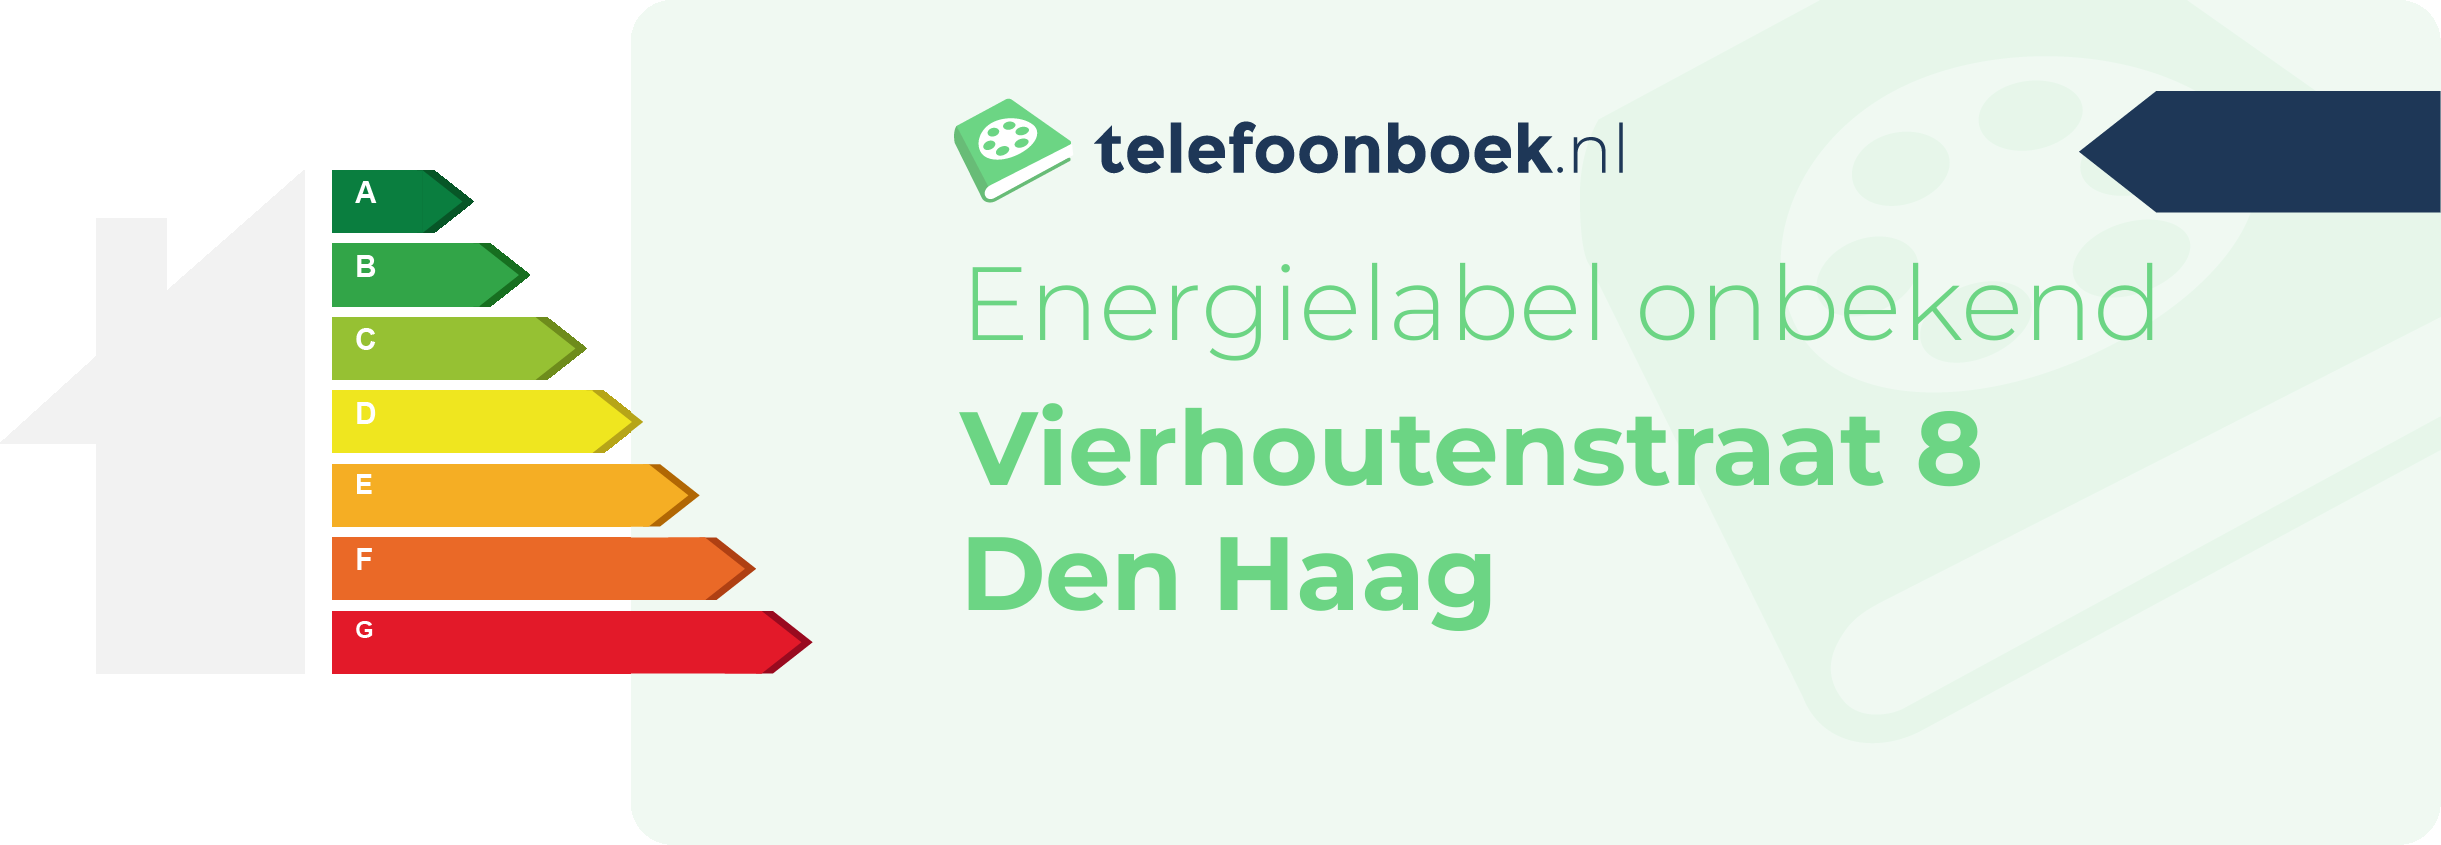 Energielabel Vierhoutenstraat 8 Den Haag